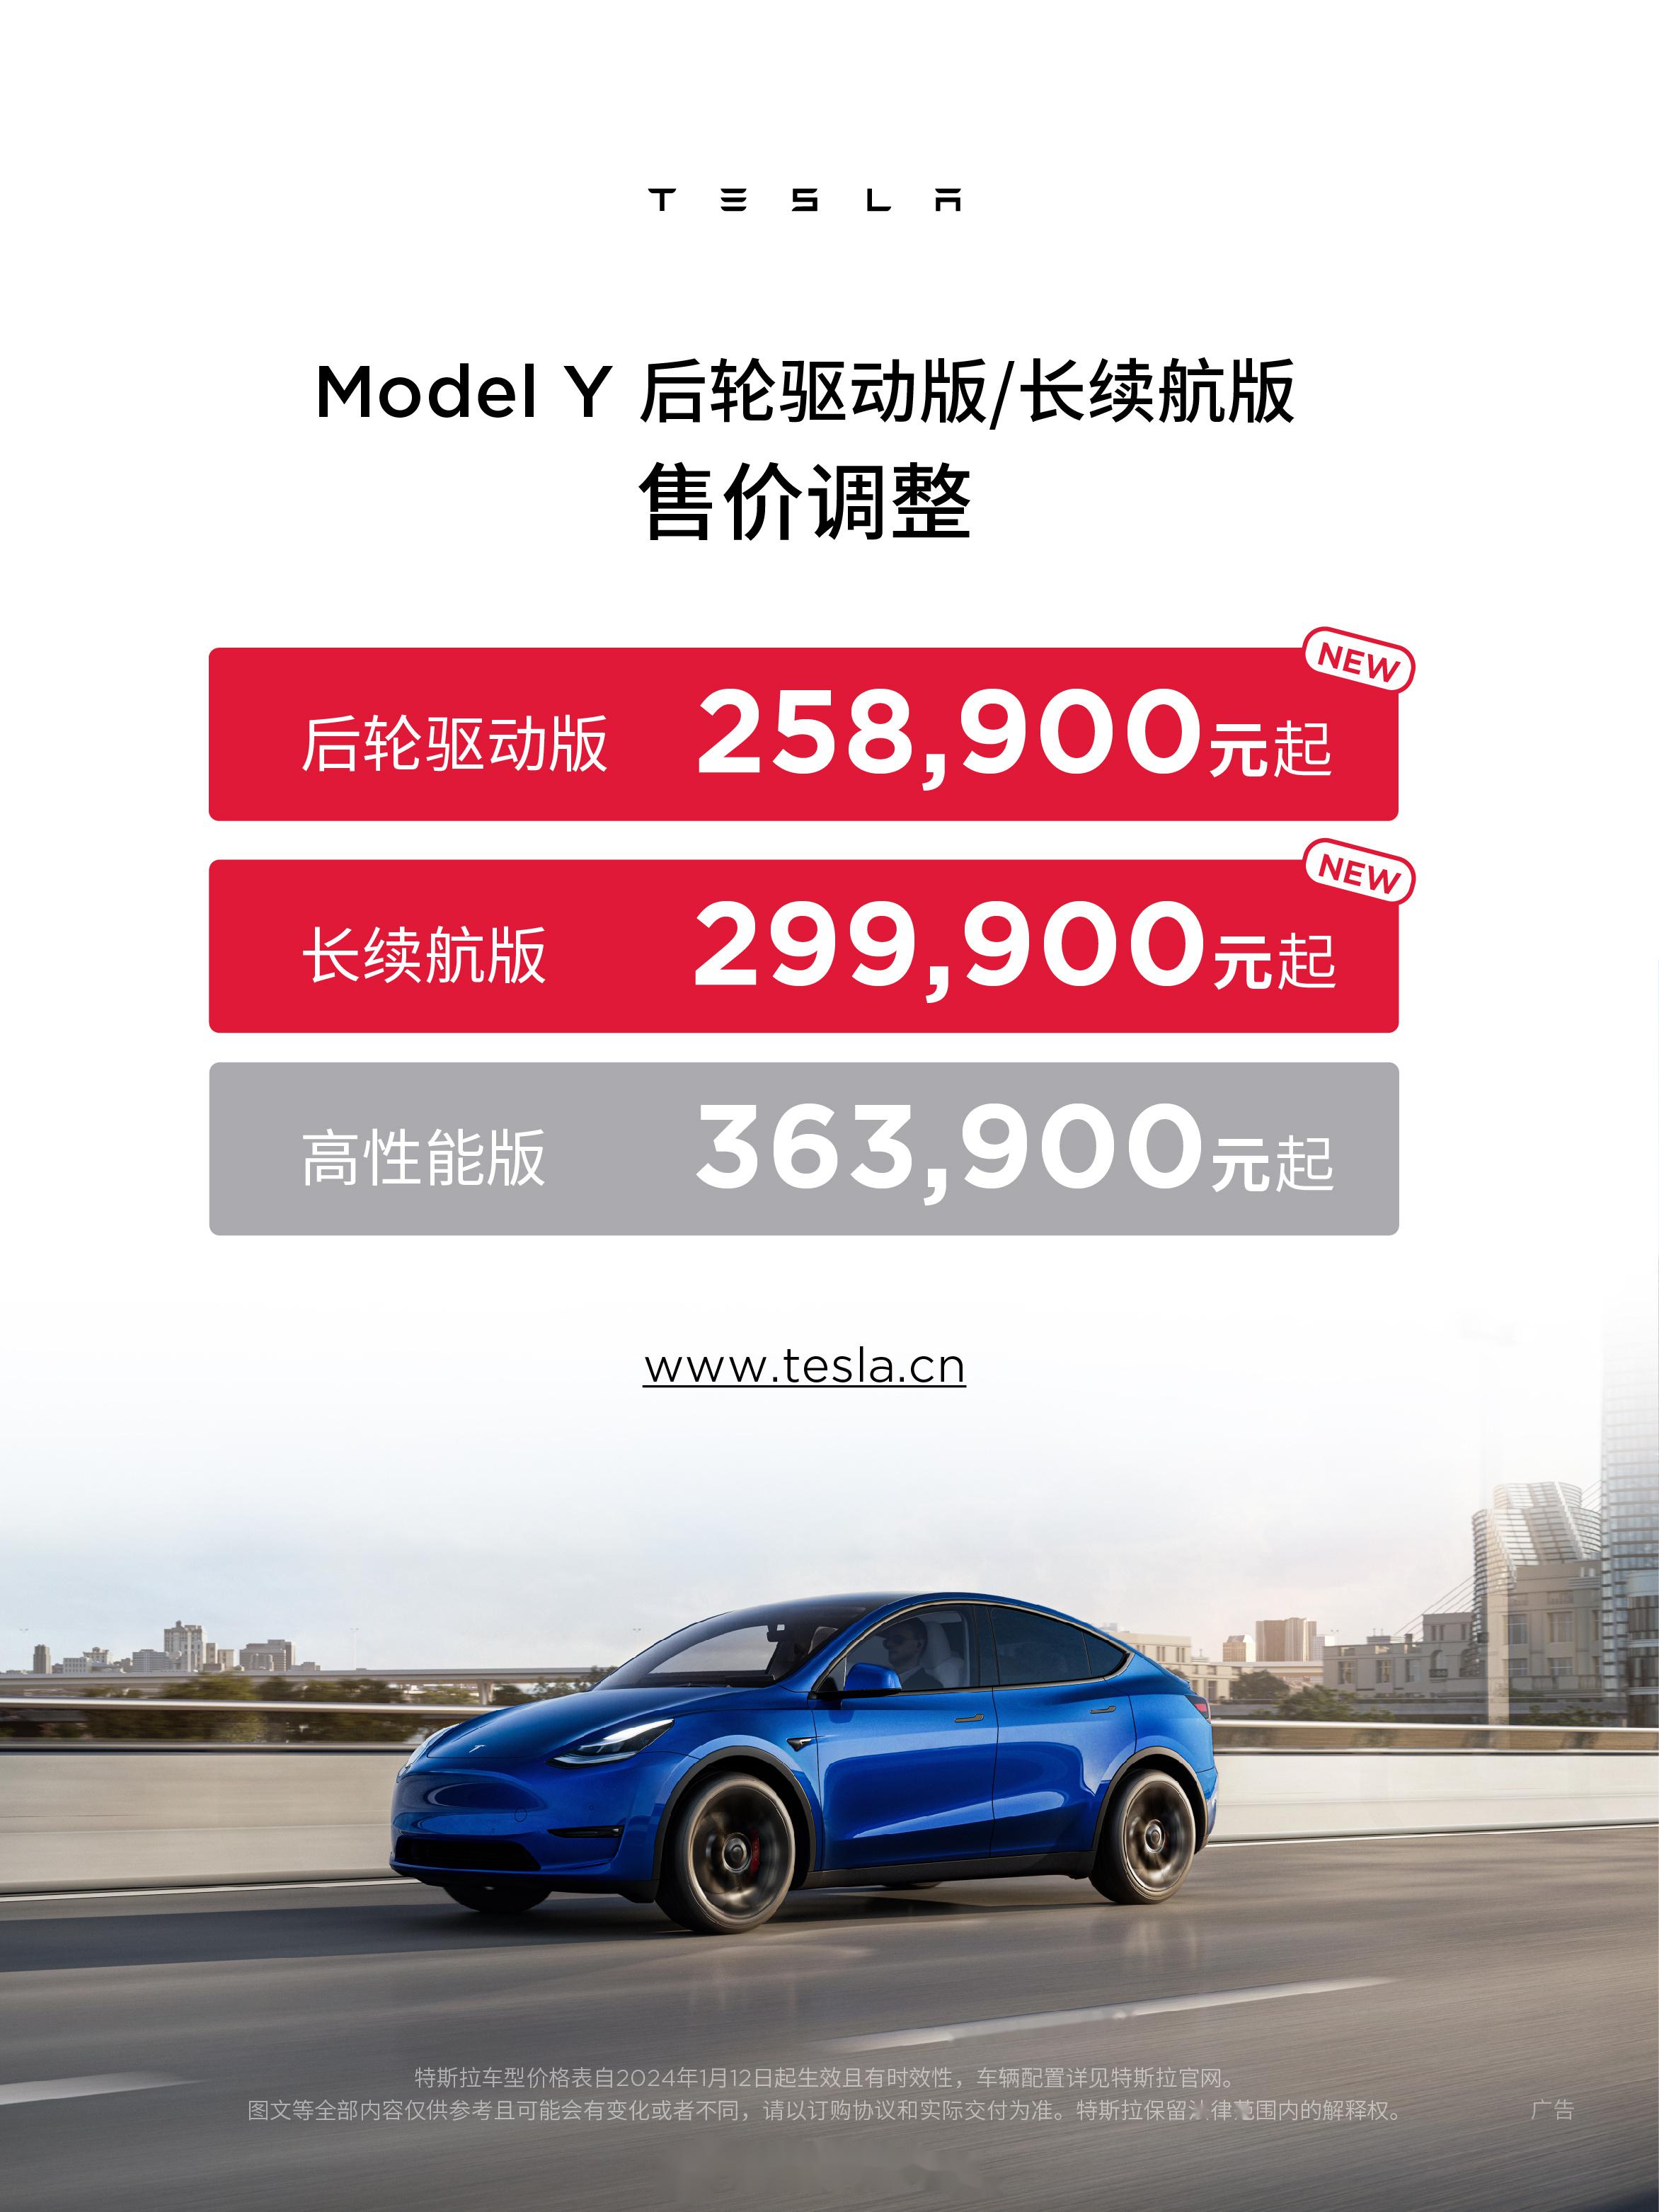 特斯拉正式官宣降价 model 3最高官降155万,标续版本从2614万调整